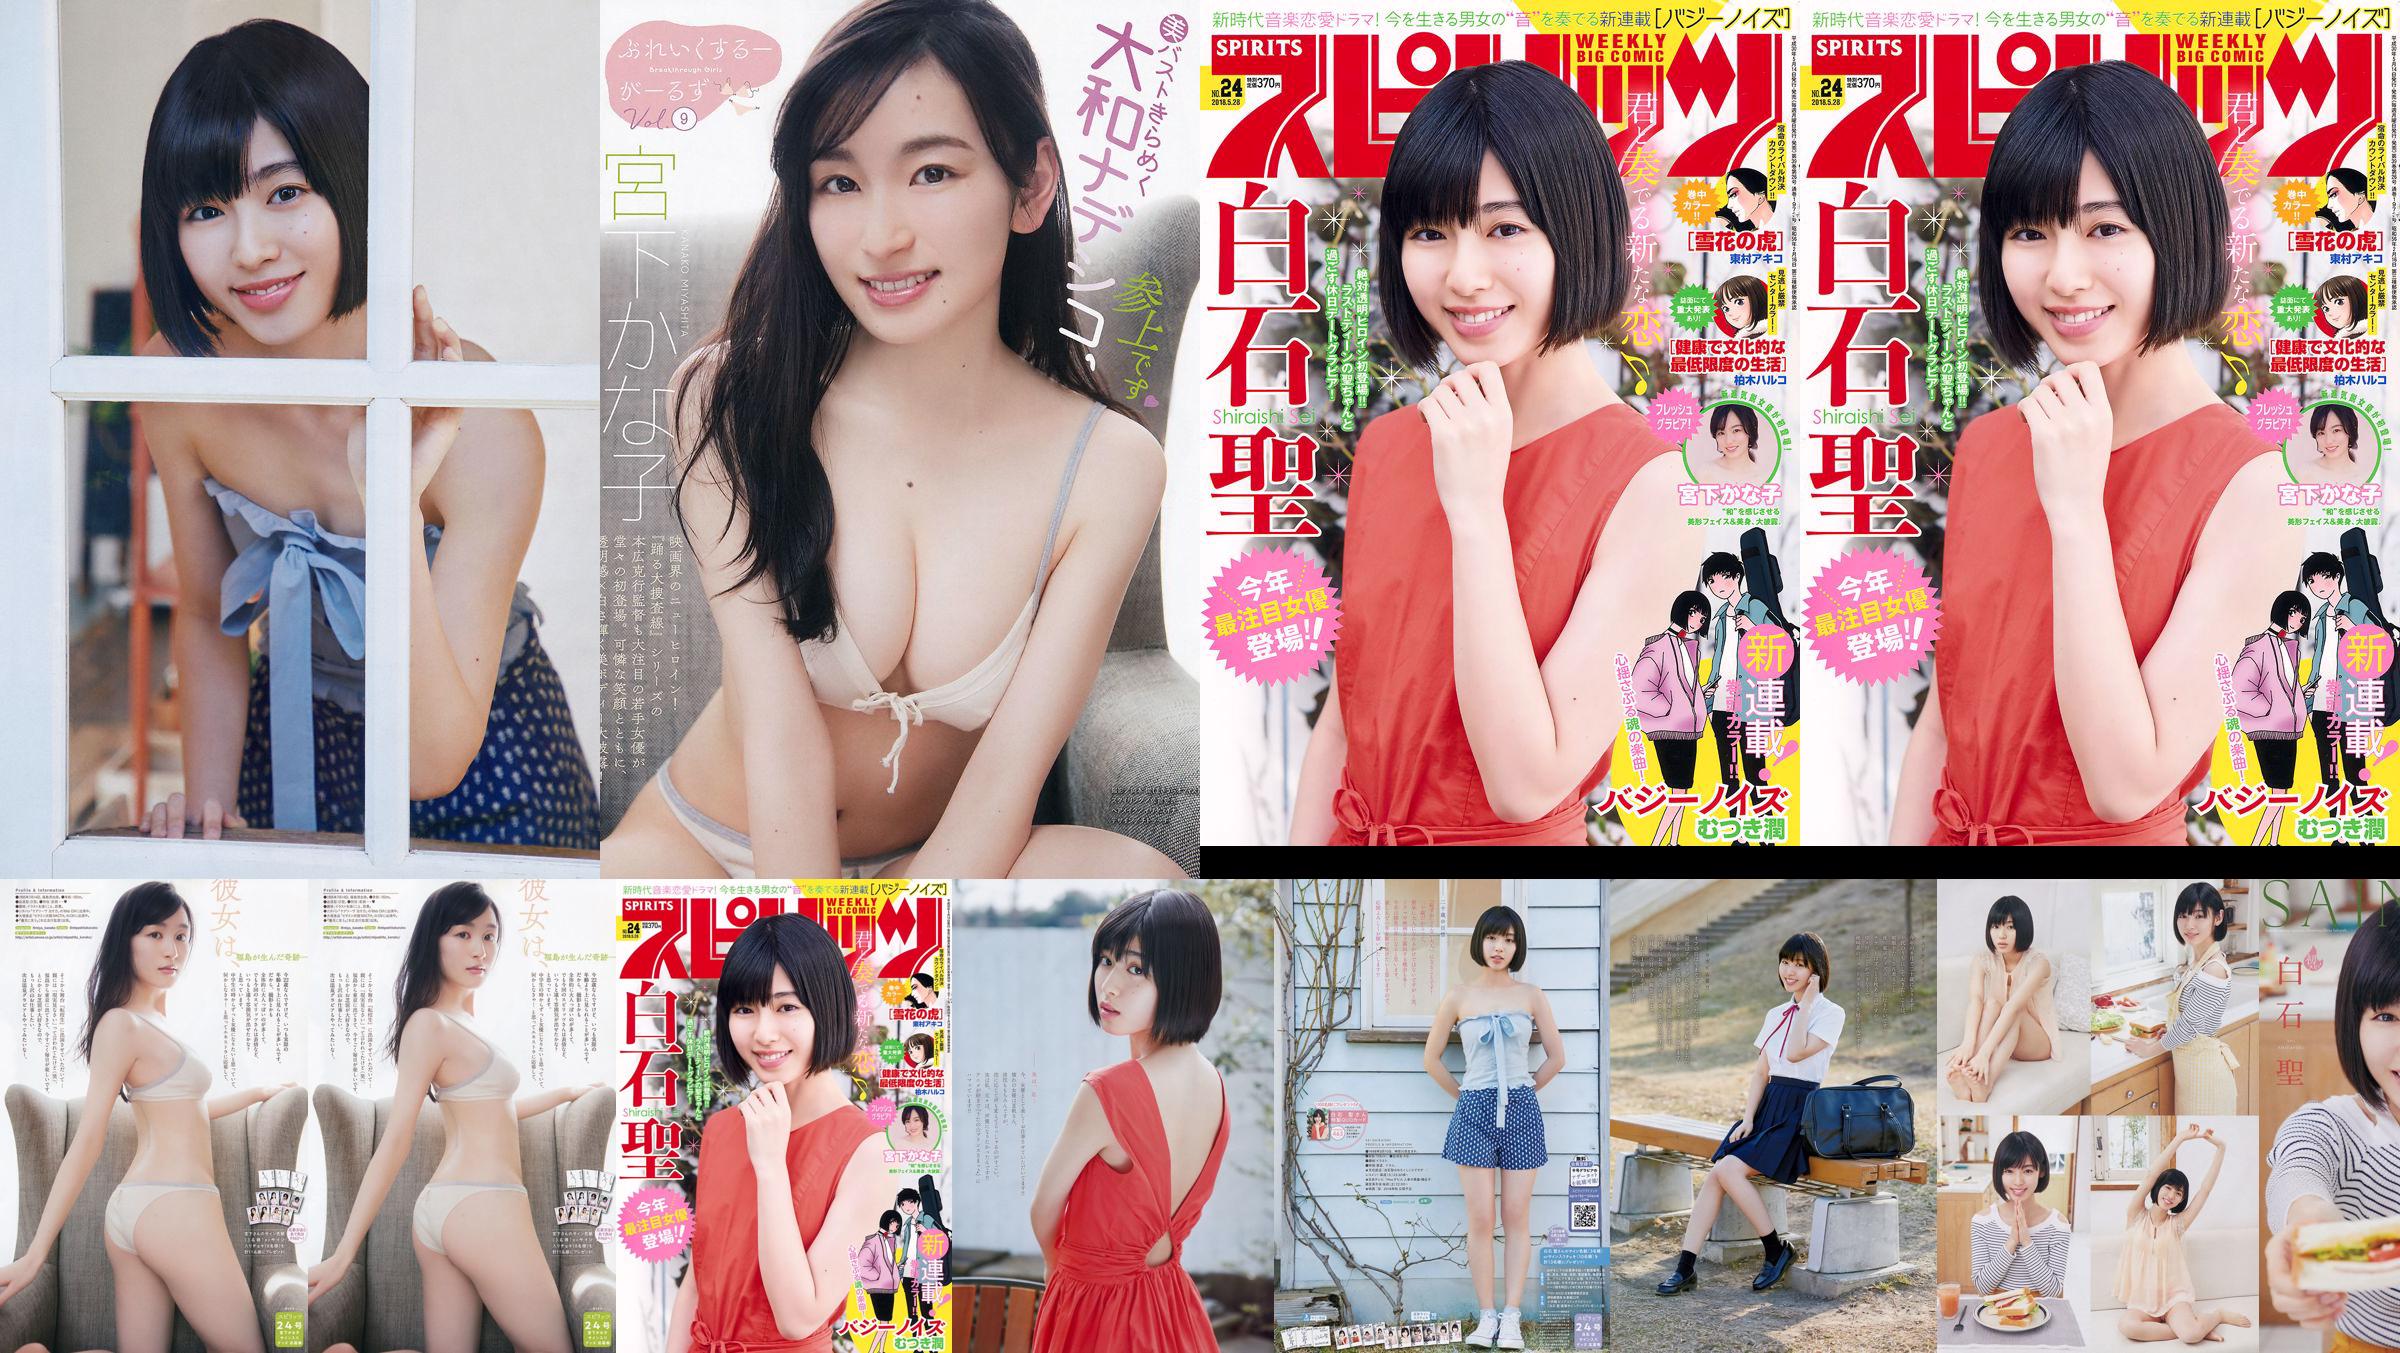 Юрия Кизаки Нана Окада AKB48 Under Girls [Weekly Young Jump] 2015 № 36-37 Фото No.3f42ea Страница 1